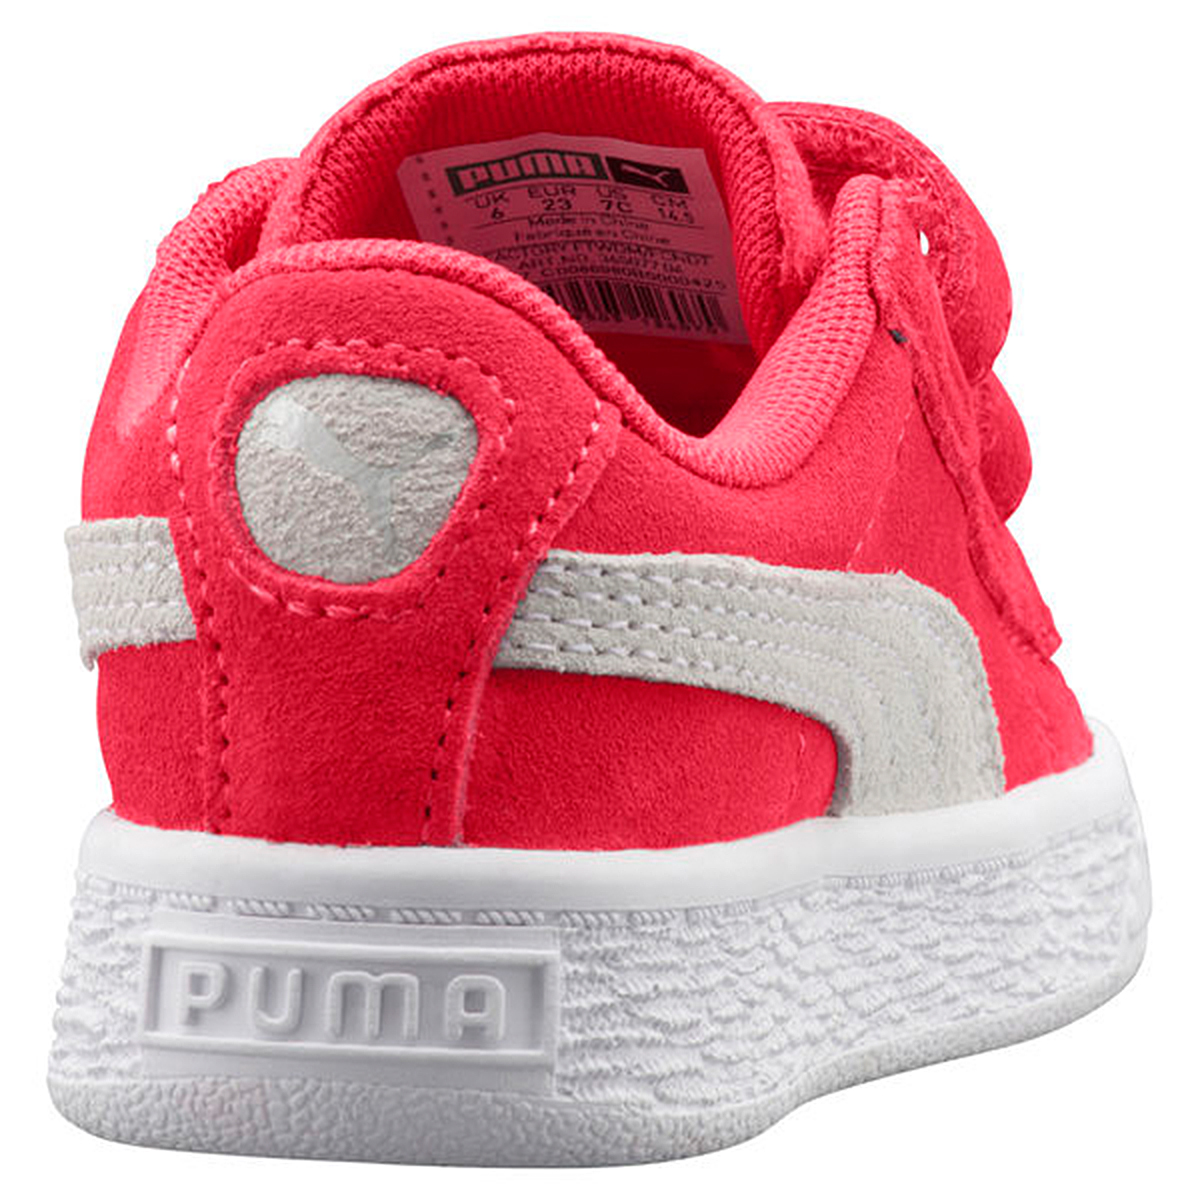 Puma Suede Classic V Inf Kinder Sneaker Schuhe 365077 04 pink